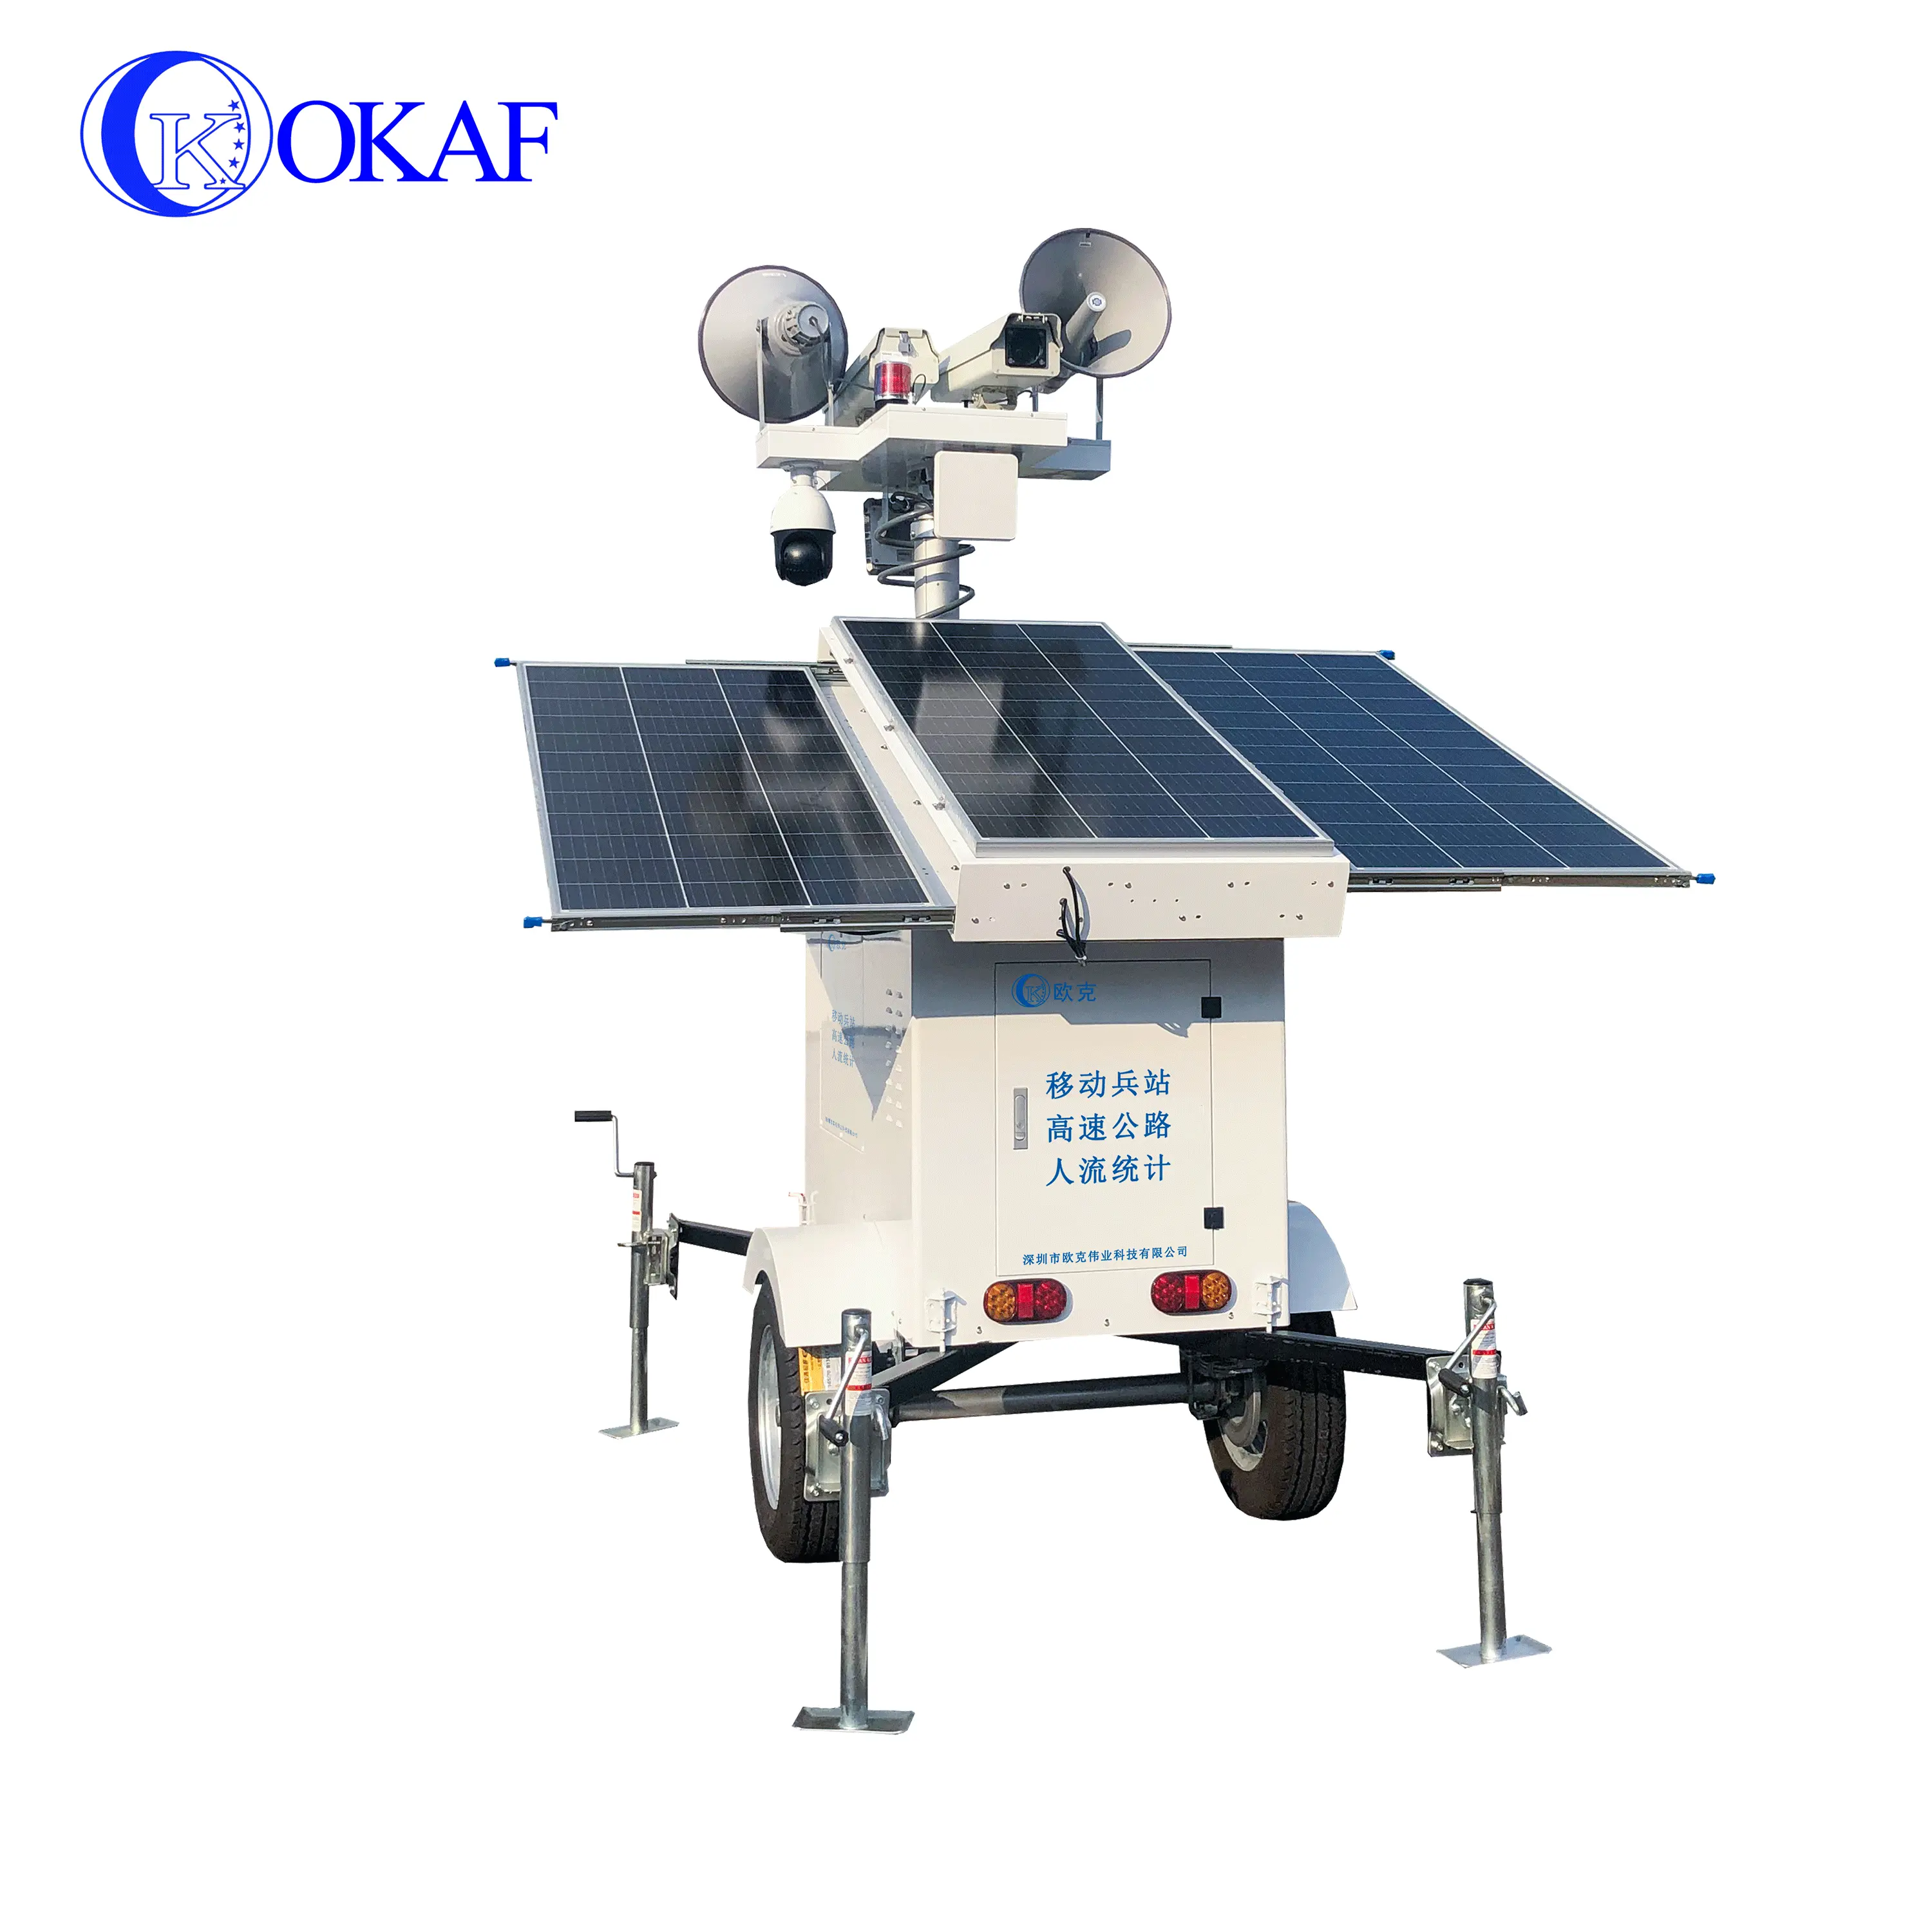 Verkehr Straßenbau Überwachung Menschen Zählen Mobile Sentry CCTV Tower Netzwerk kamera Solar Surveillance Trailer